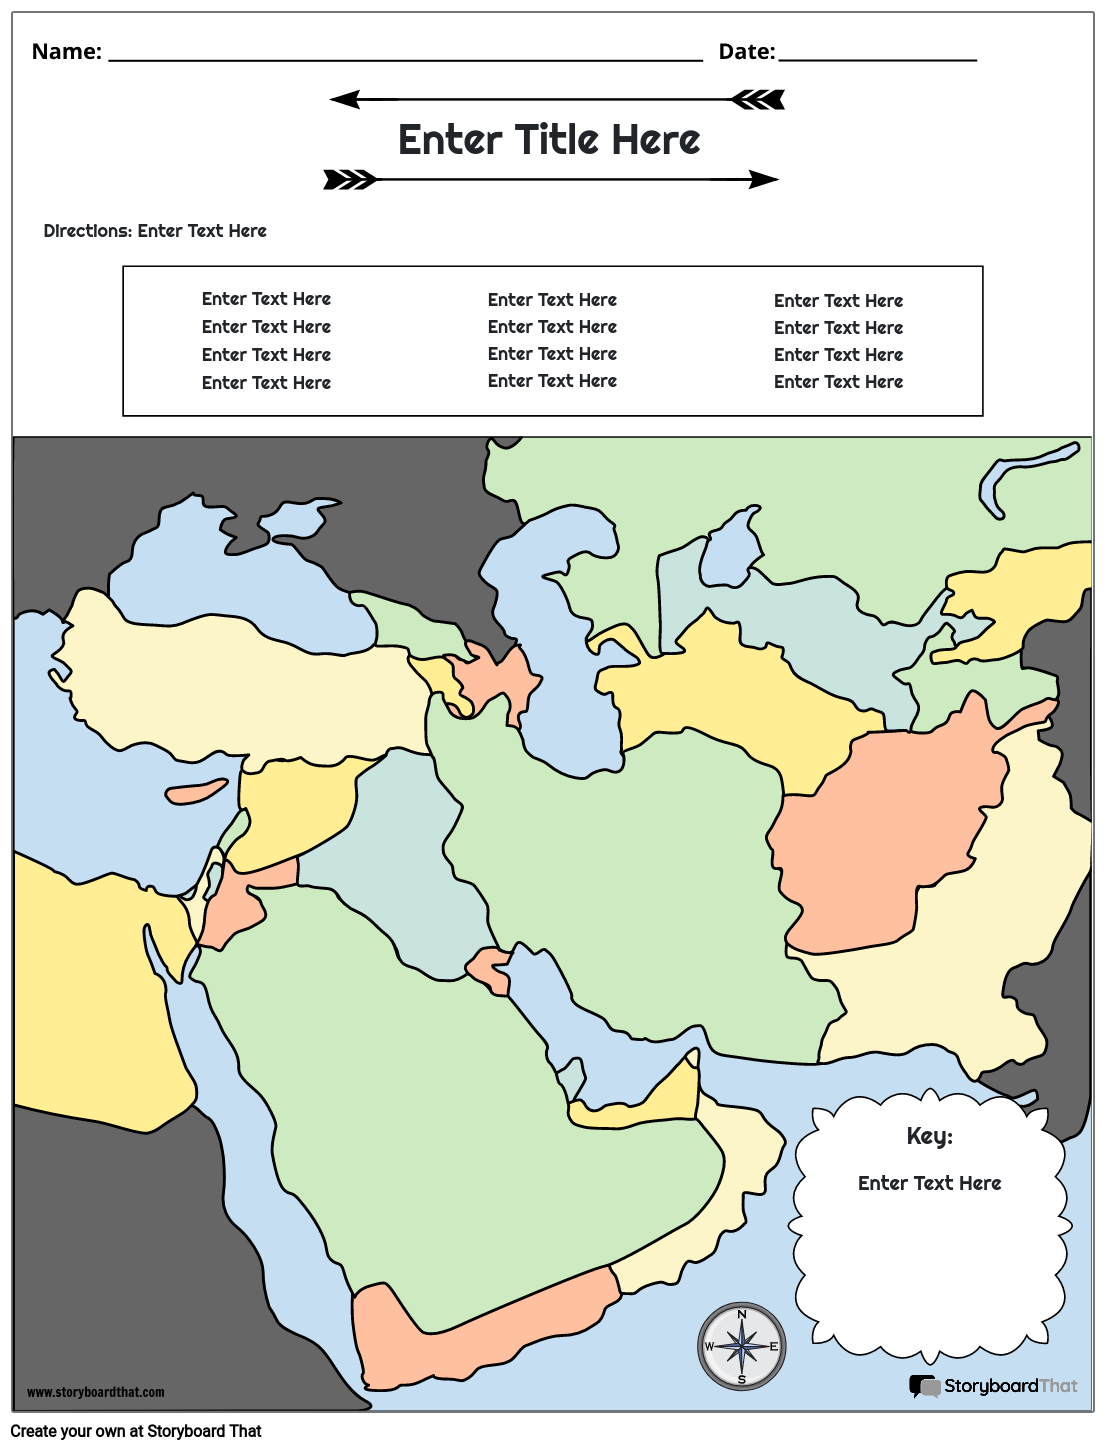 Zemljevid Bližnjega Vzhoda